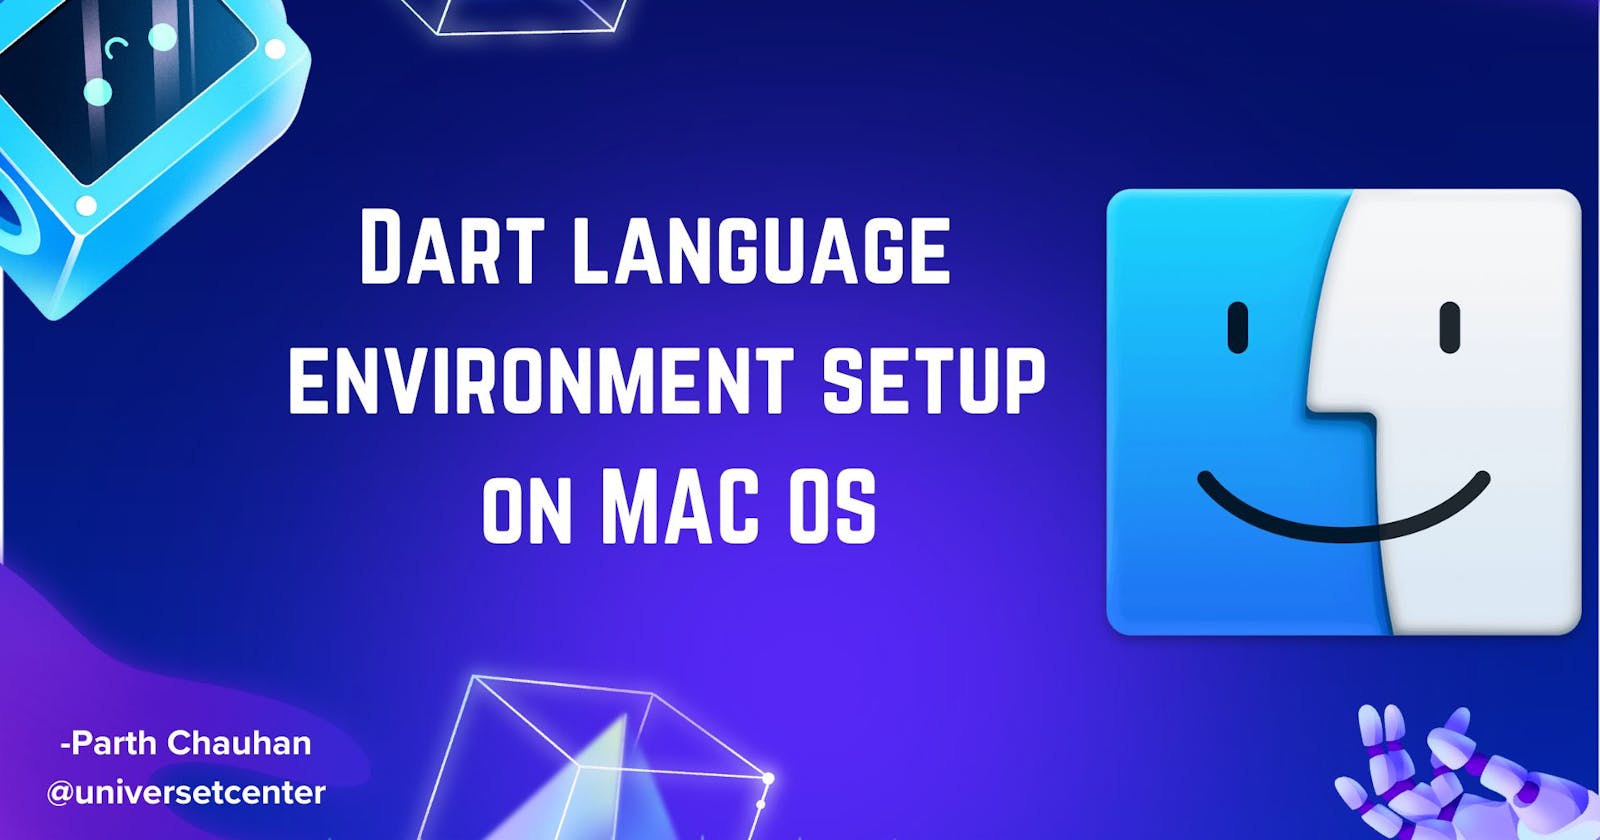 Dart language environment setup